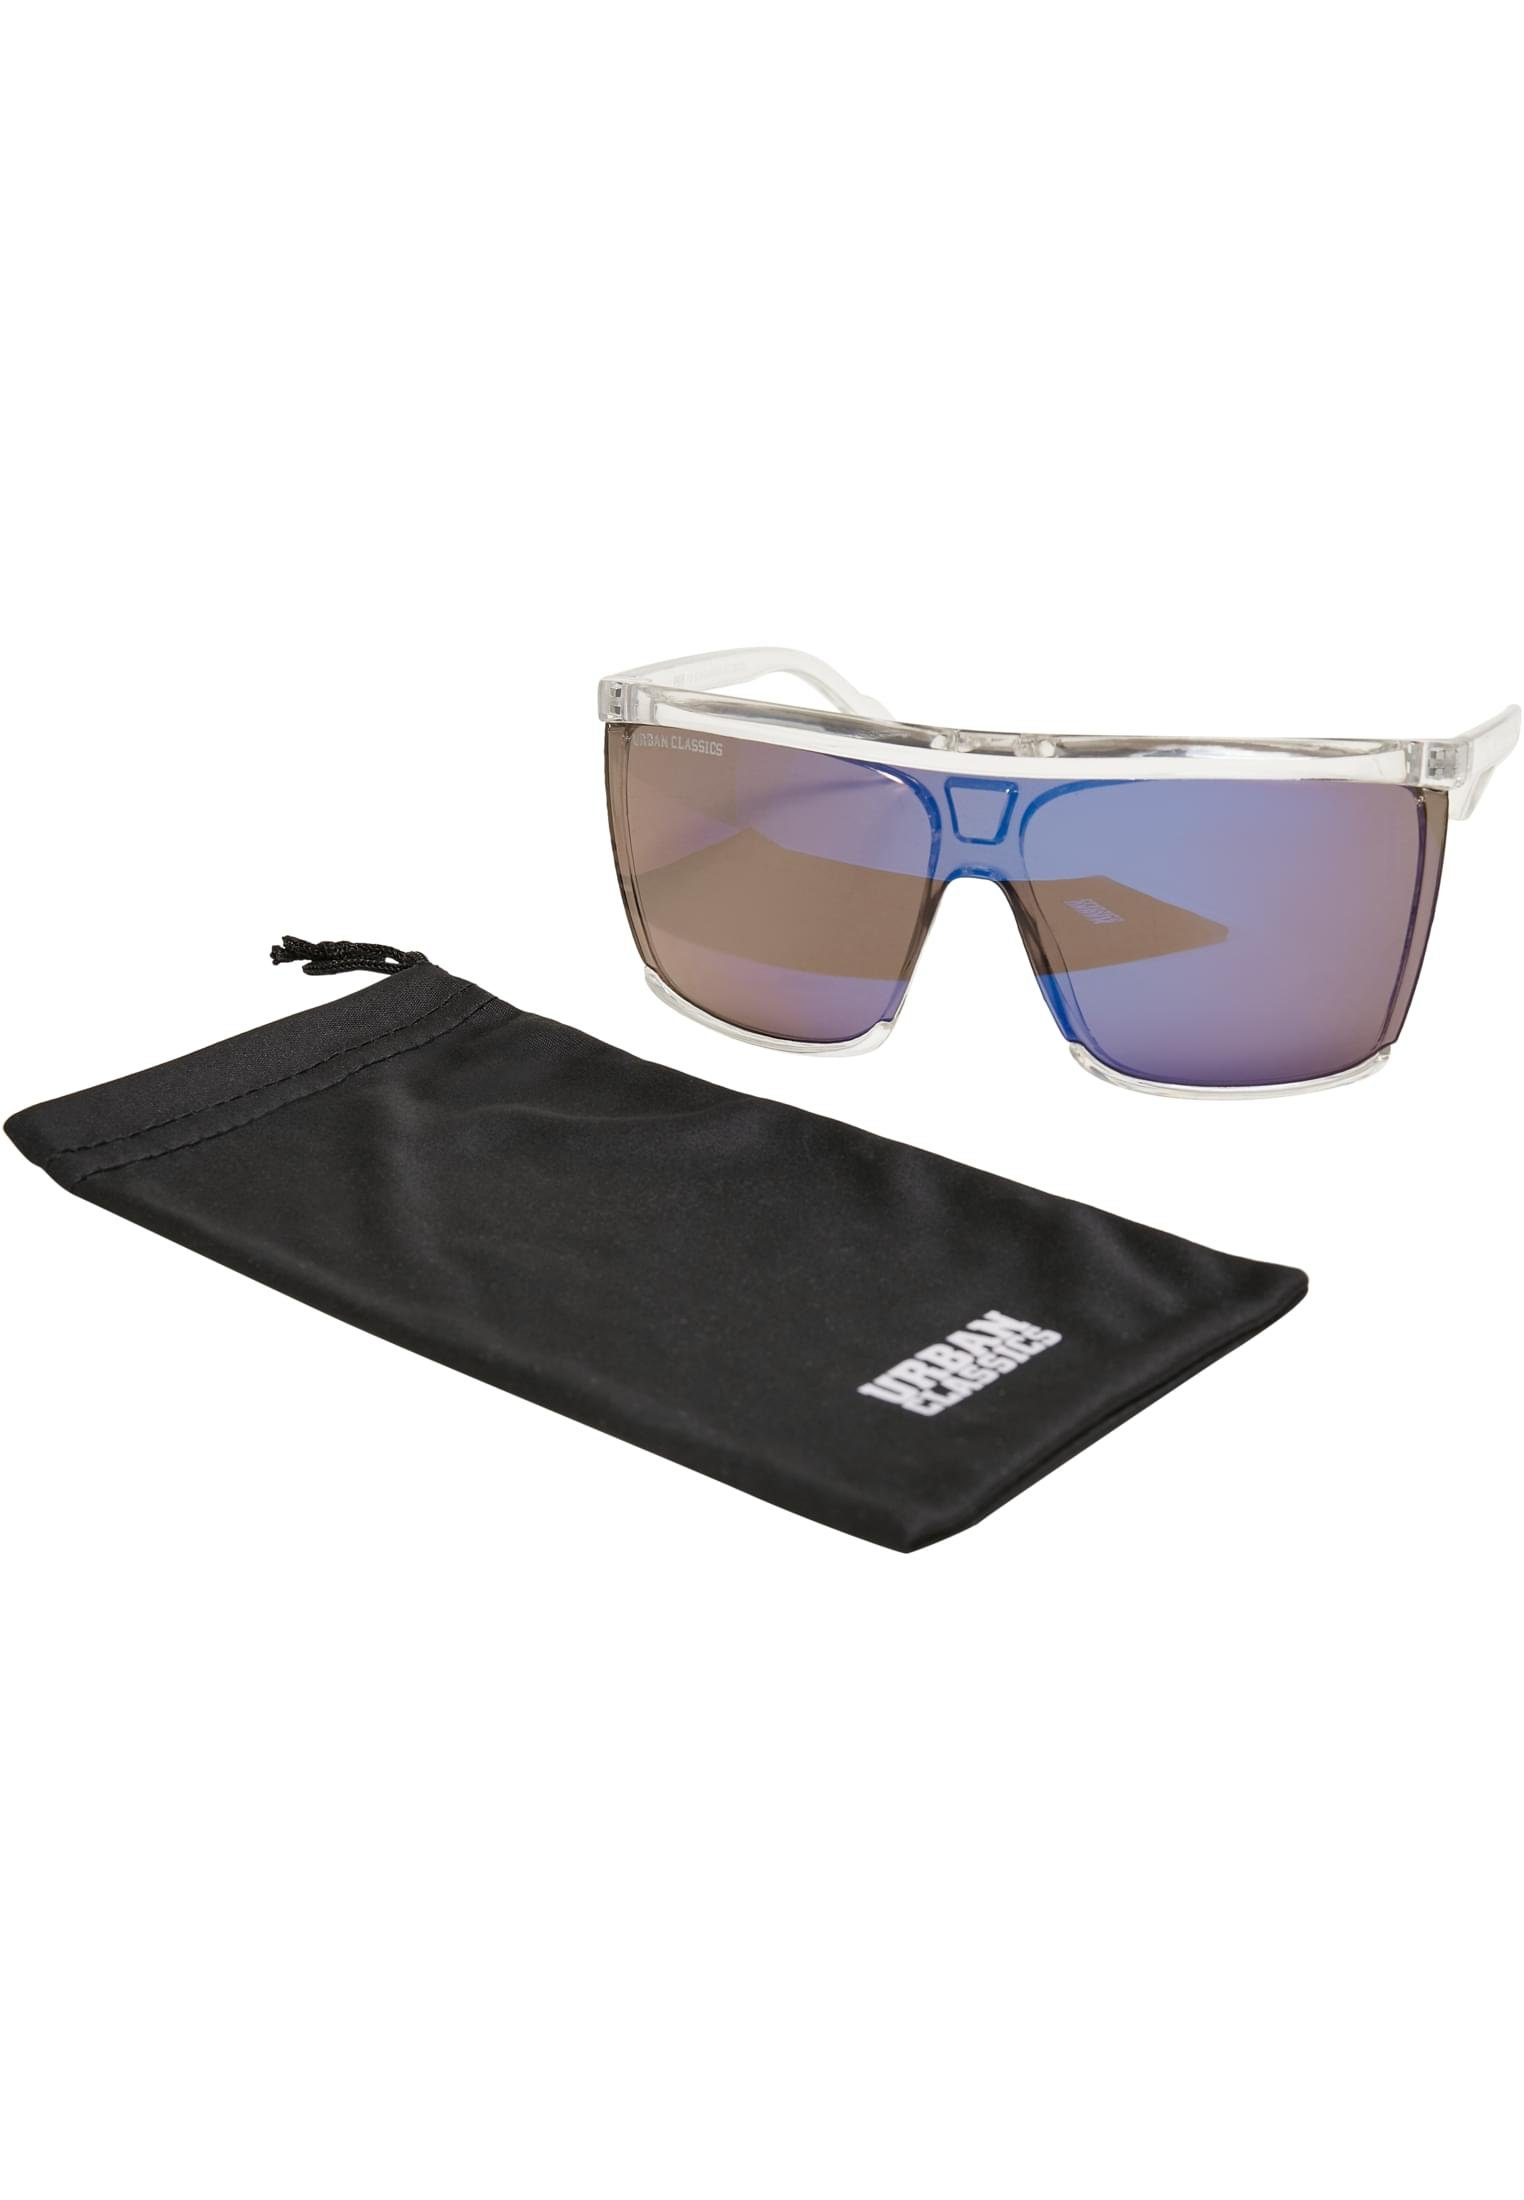 Sonnenbrille UC 112 URBAN CLASSICS Sunglasses Accessoires transparent/multicolor